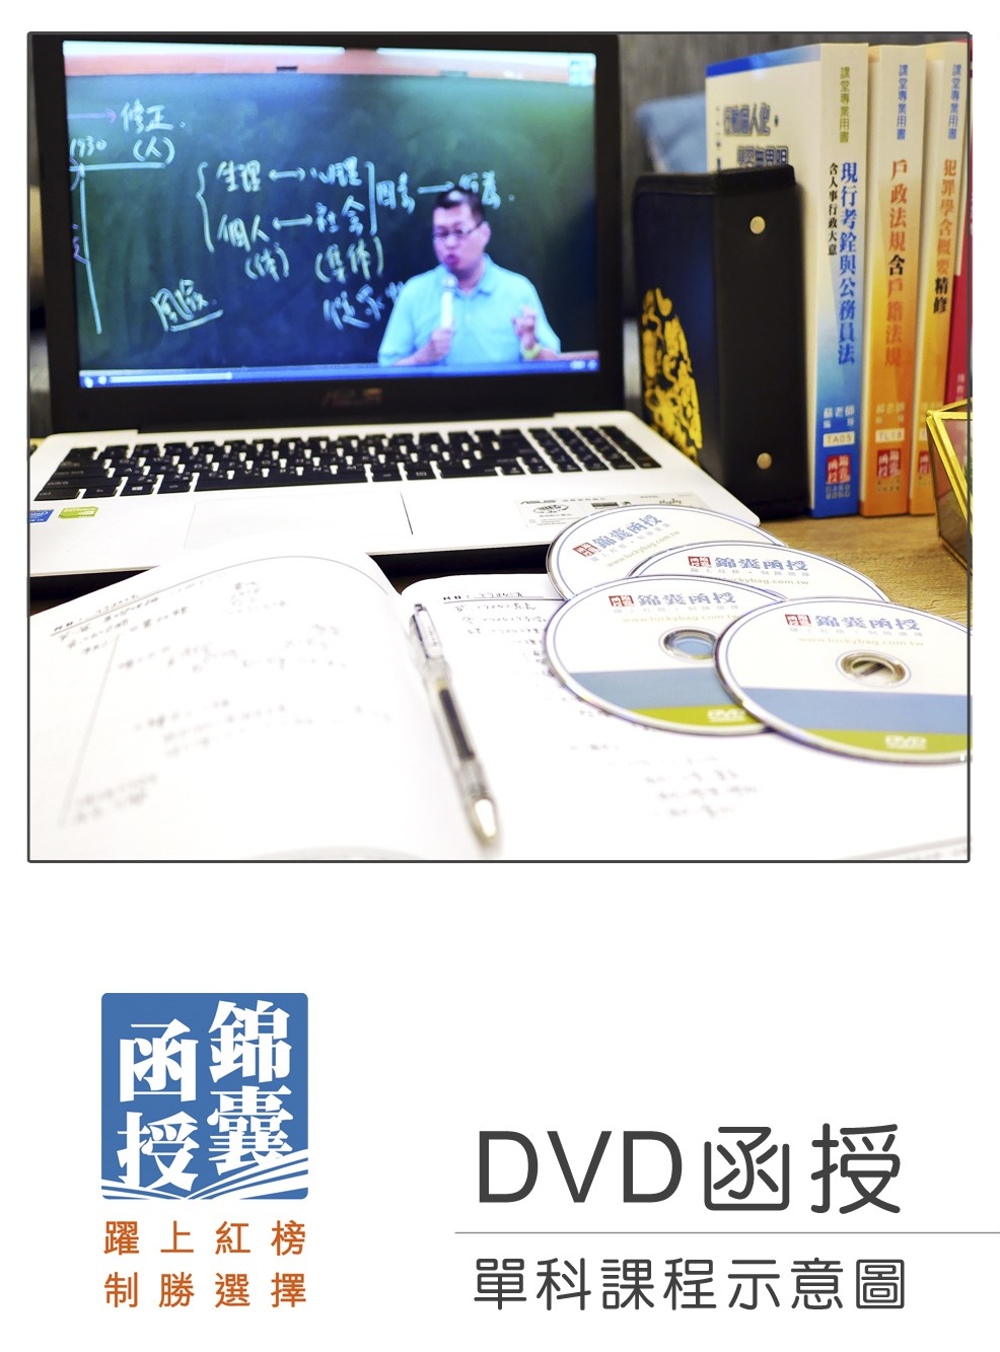 【DVD函授】郵政法暨交通安全常識(含郵政三法)：單科課程(...